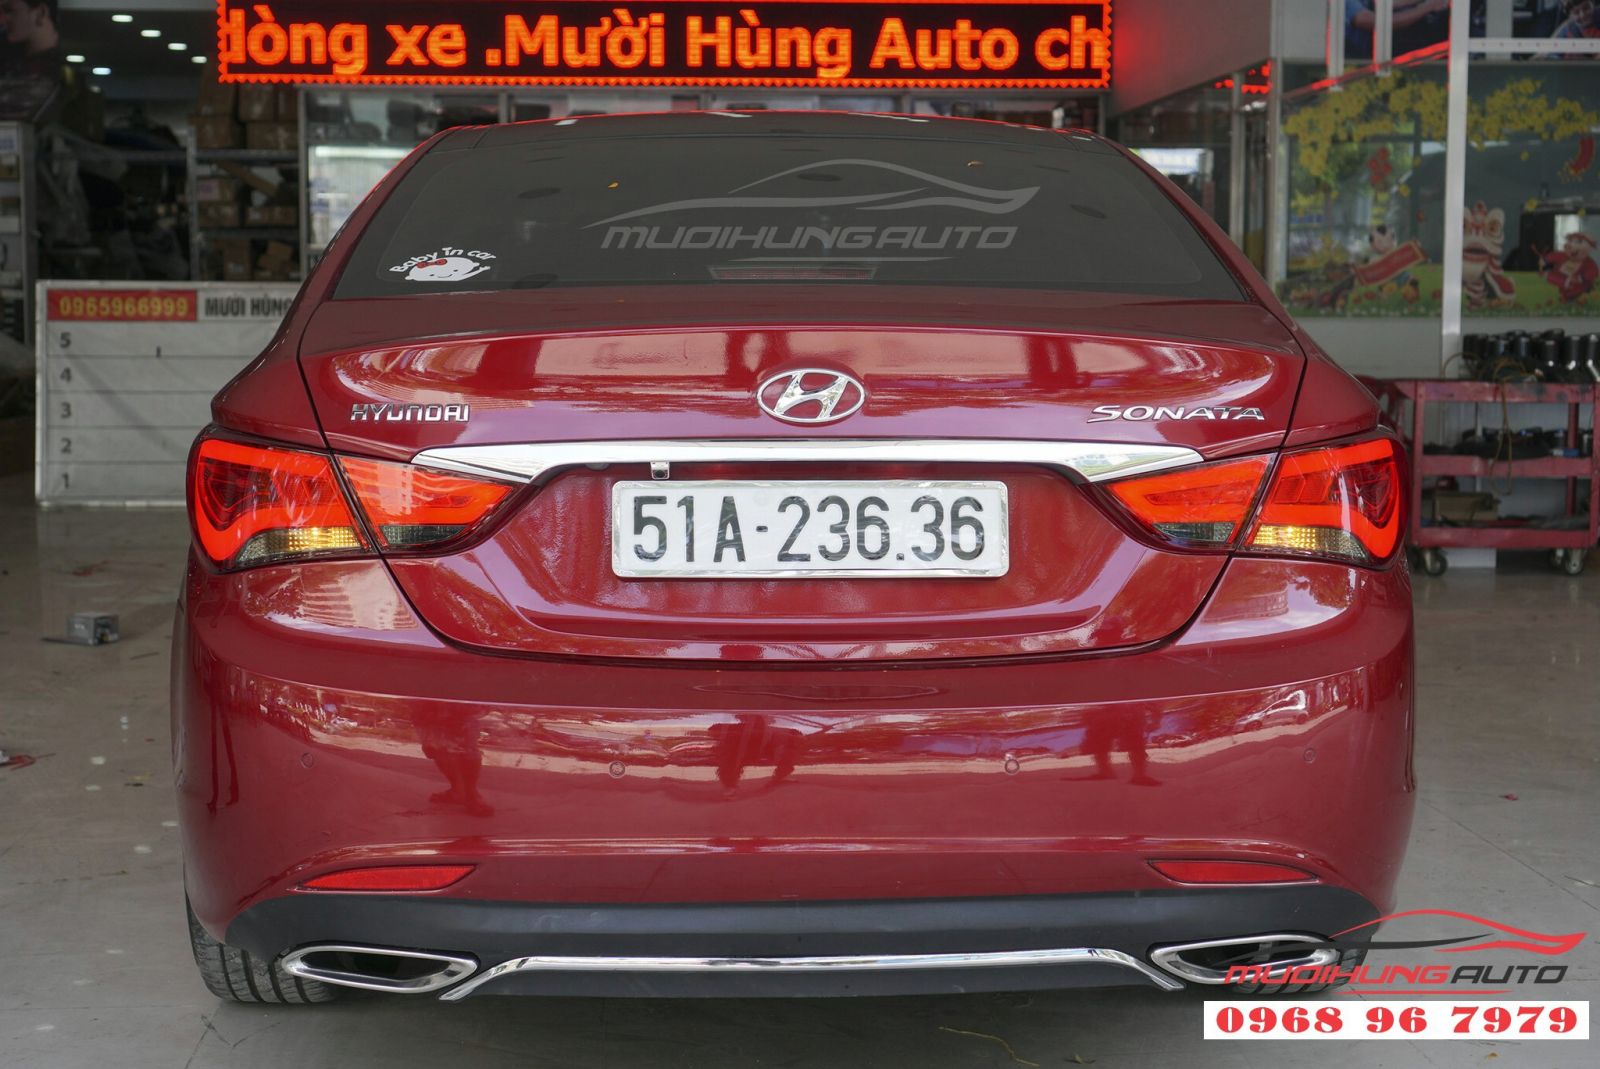 Hyundai Sonata 2011 độ đèn hậu nguyên cụm giá tốt 05